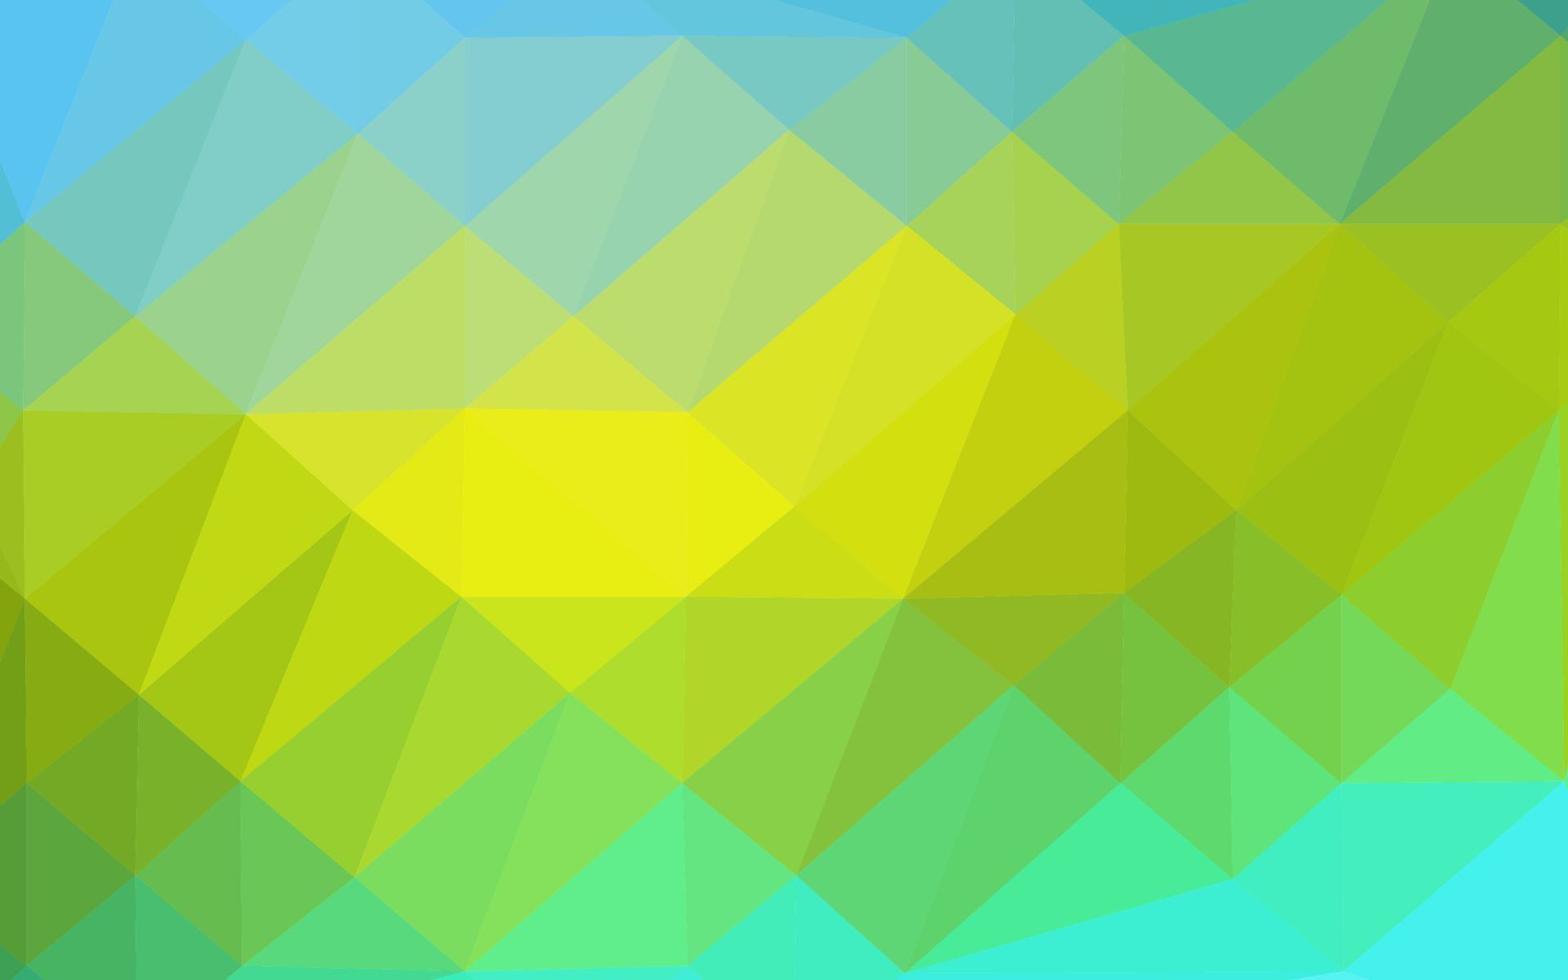 ljusblå, gul vektor abstrakt mosaik bakgrund.